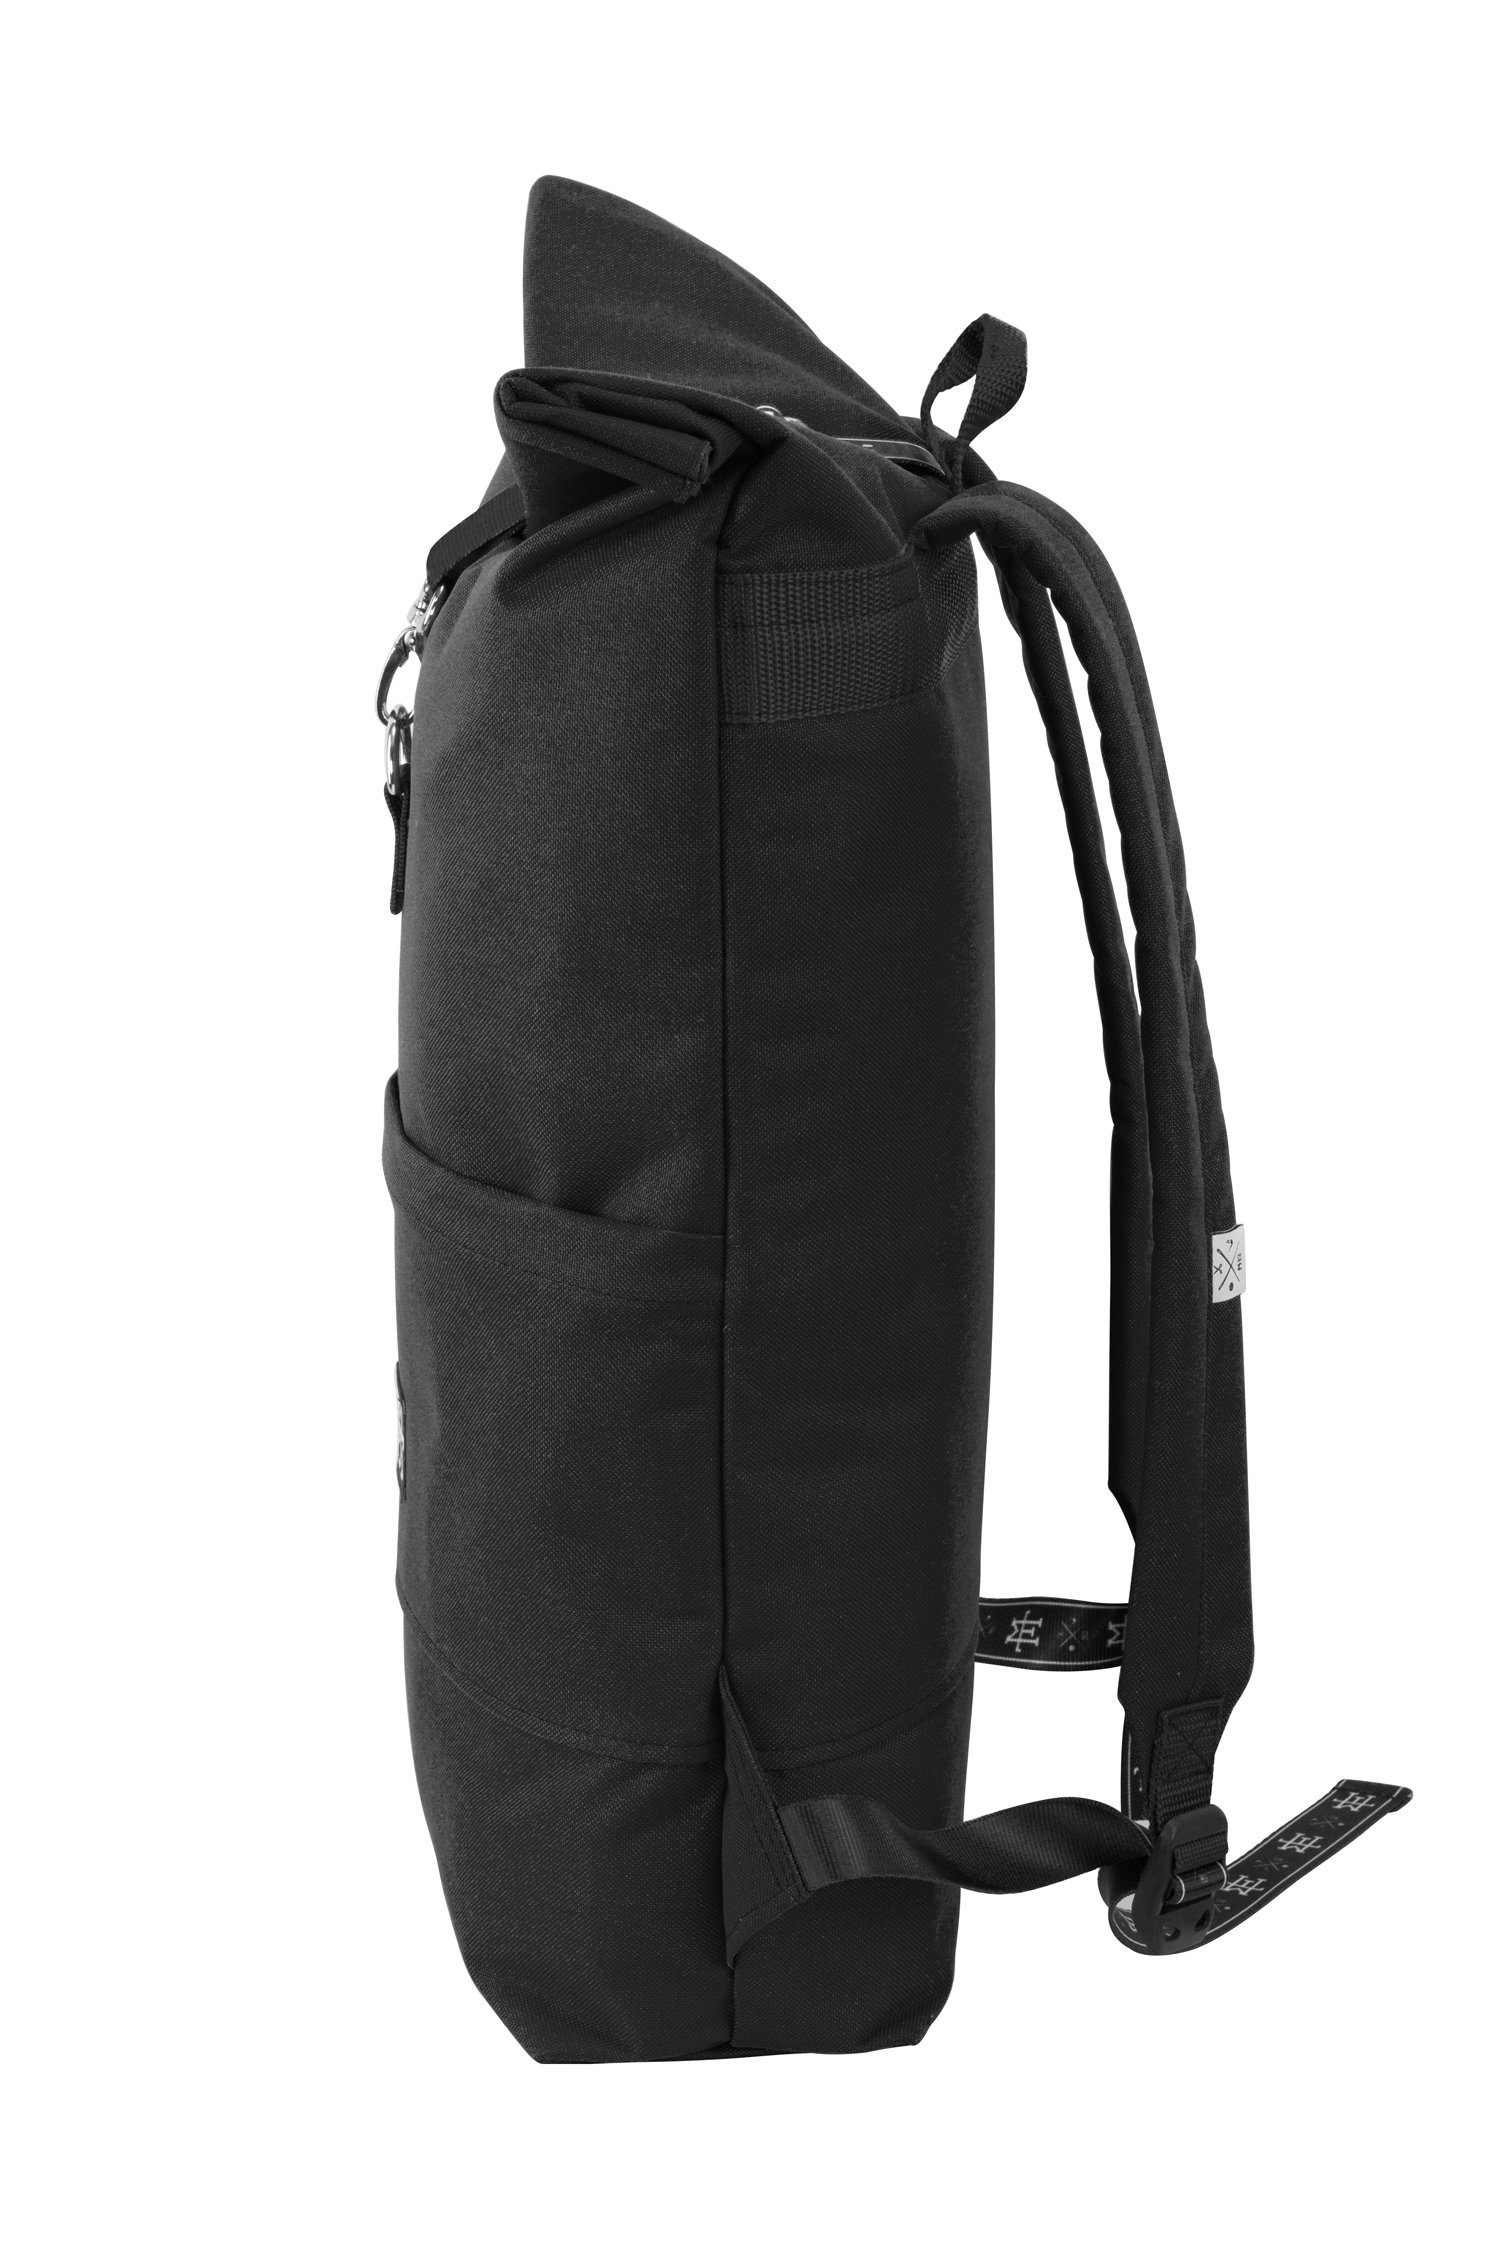 Roll-Top verstellbare wasserdicht/wasserabweisend, Rollverschluss, - Out mit Black Backpack Rucksack Manufaktur13 Tagesrucksack Gurte